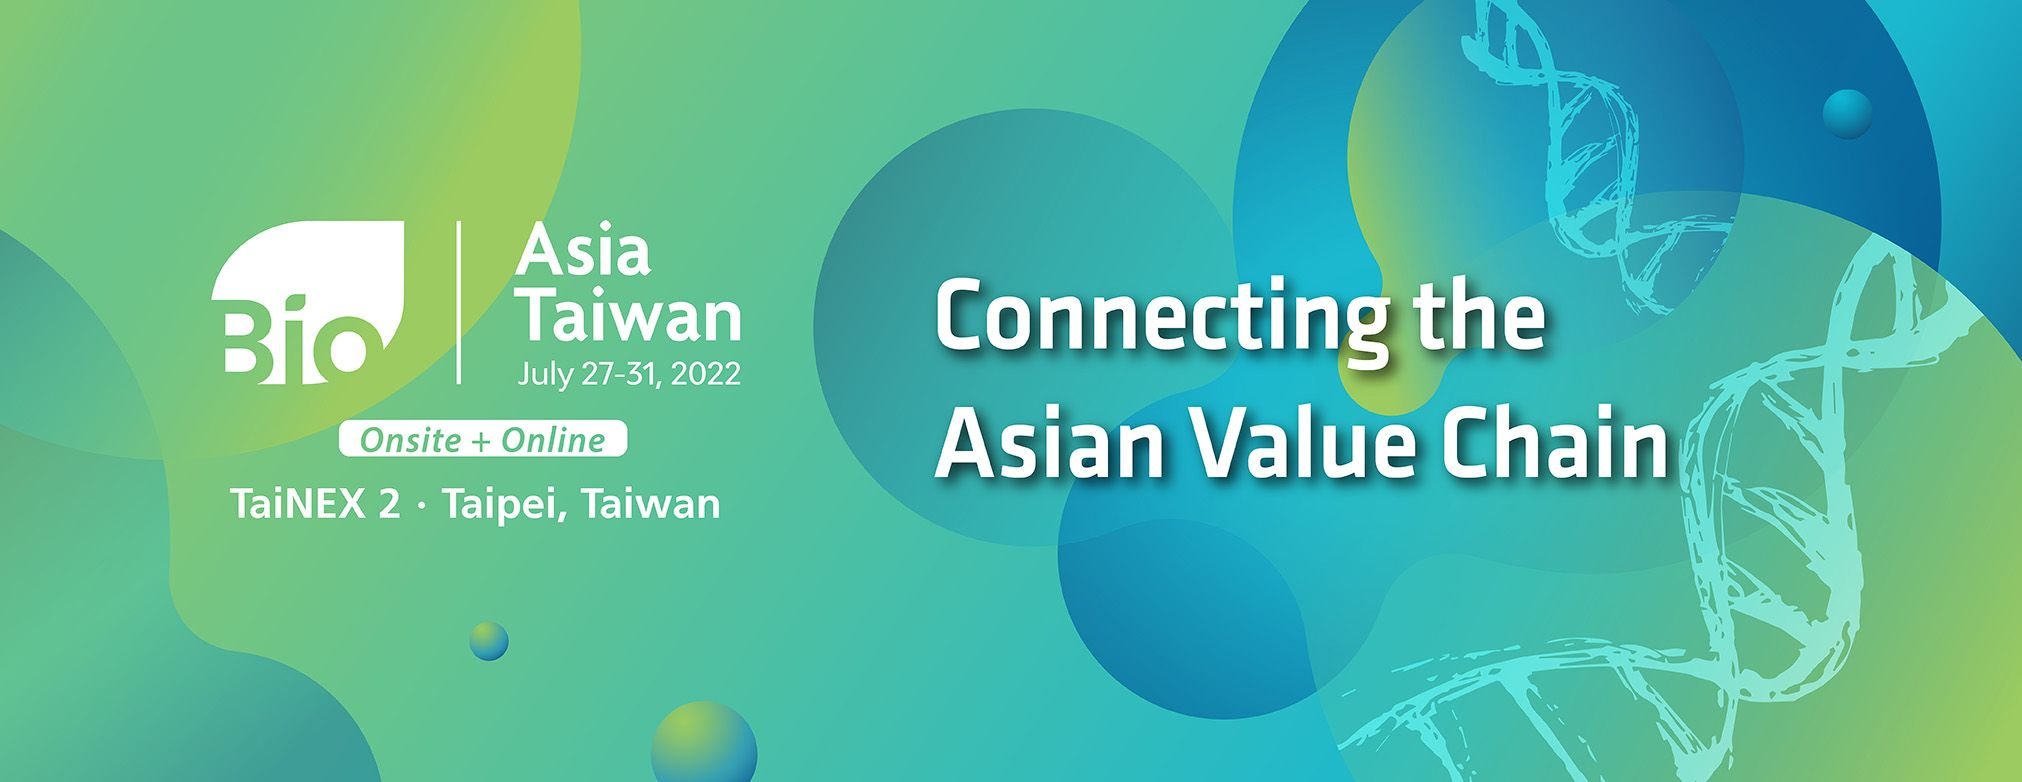 2022 BioAsia Taiwan